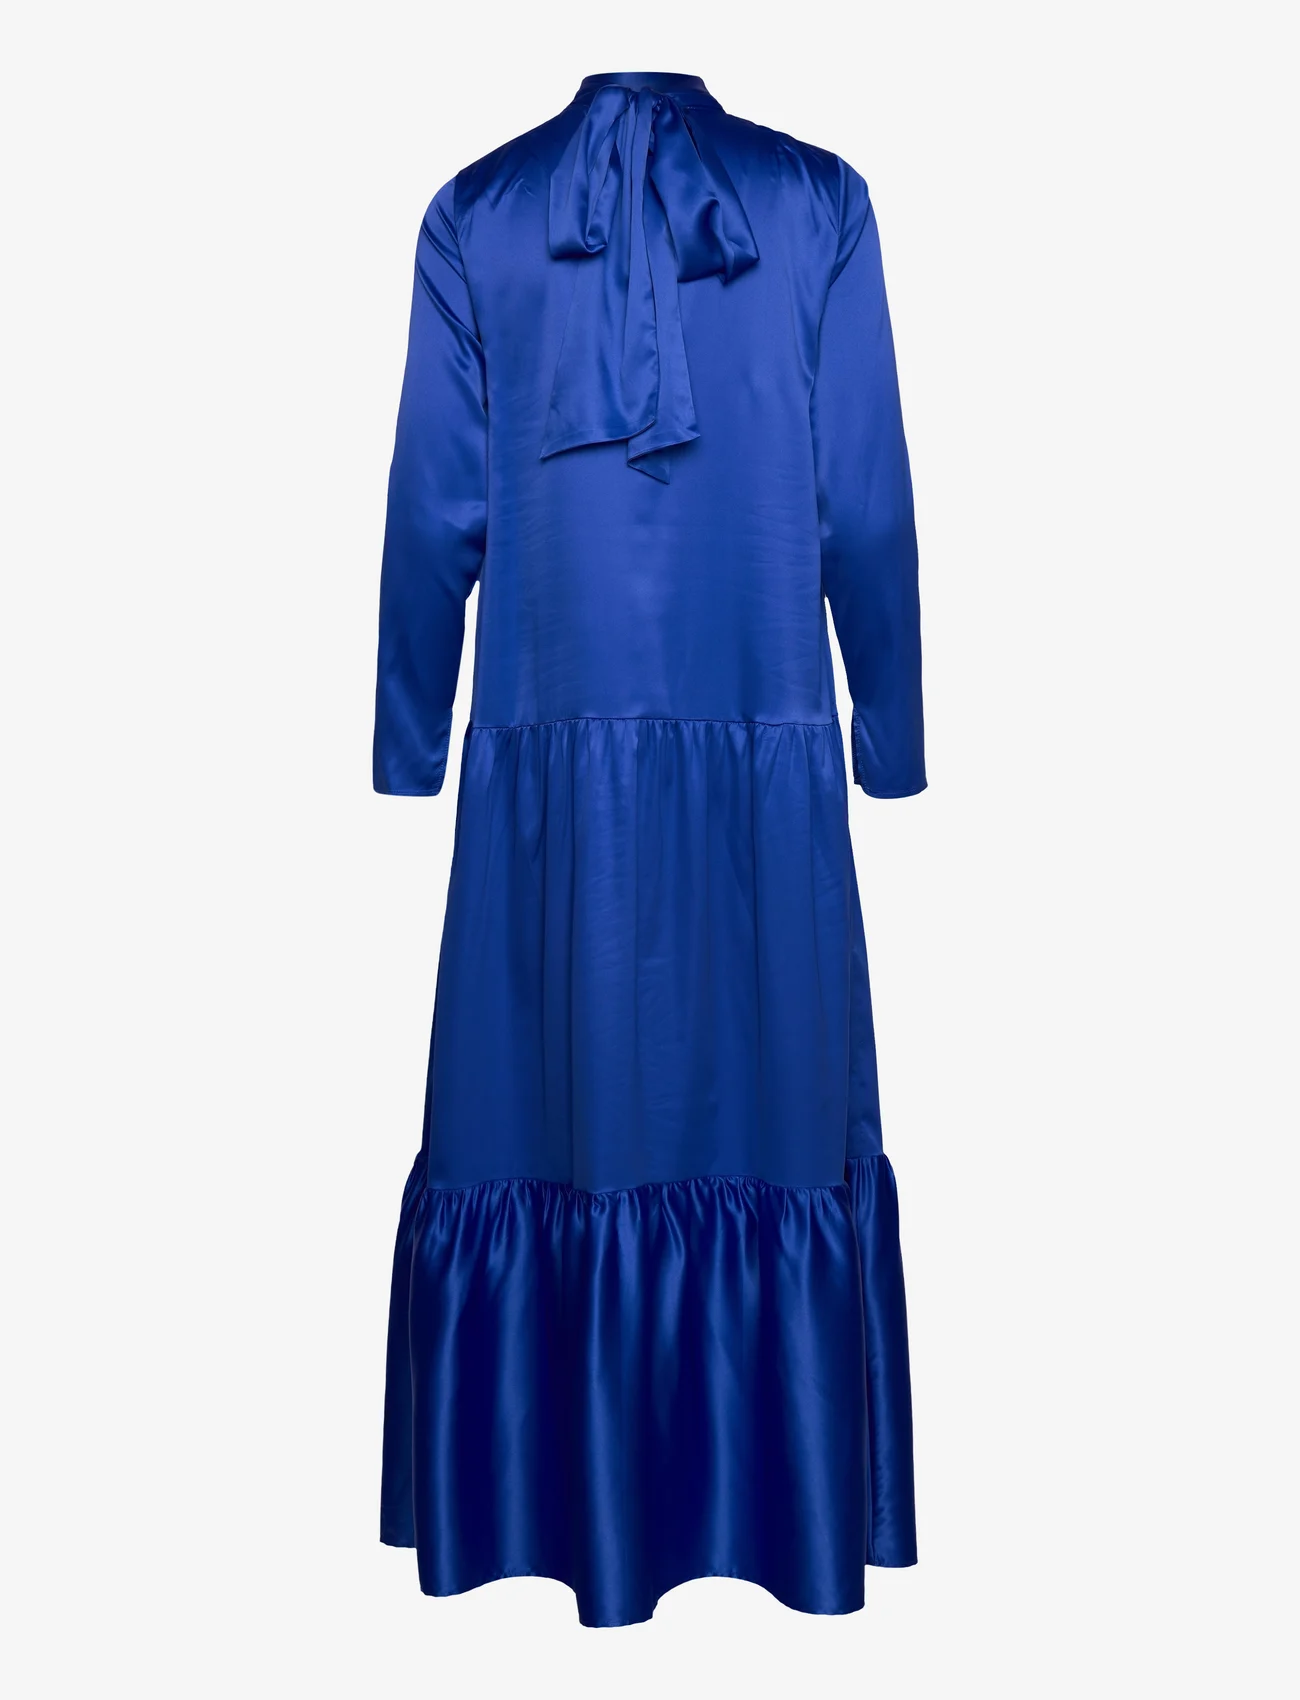 Résumé - OrianneRS Dress - feestelijke kleding voor outlet-prijzen - electric blue - 1